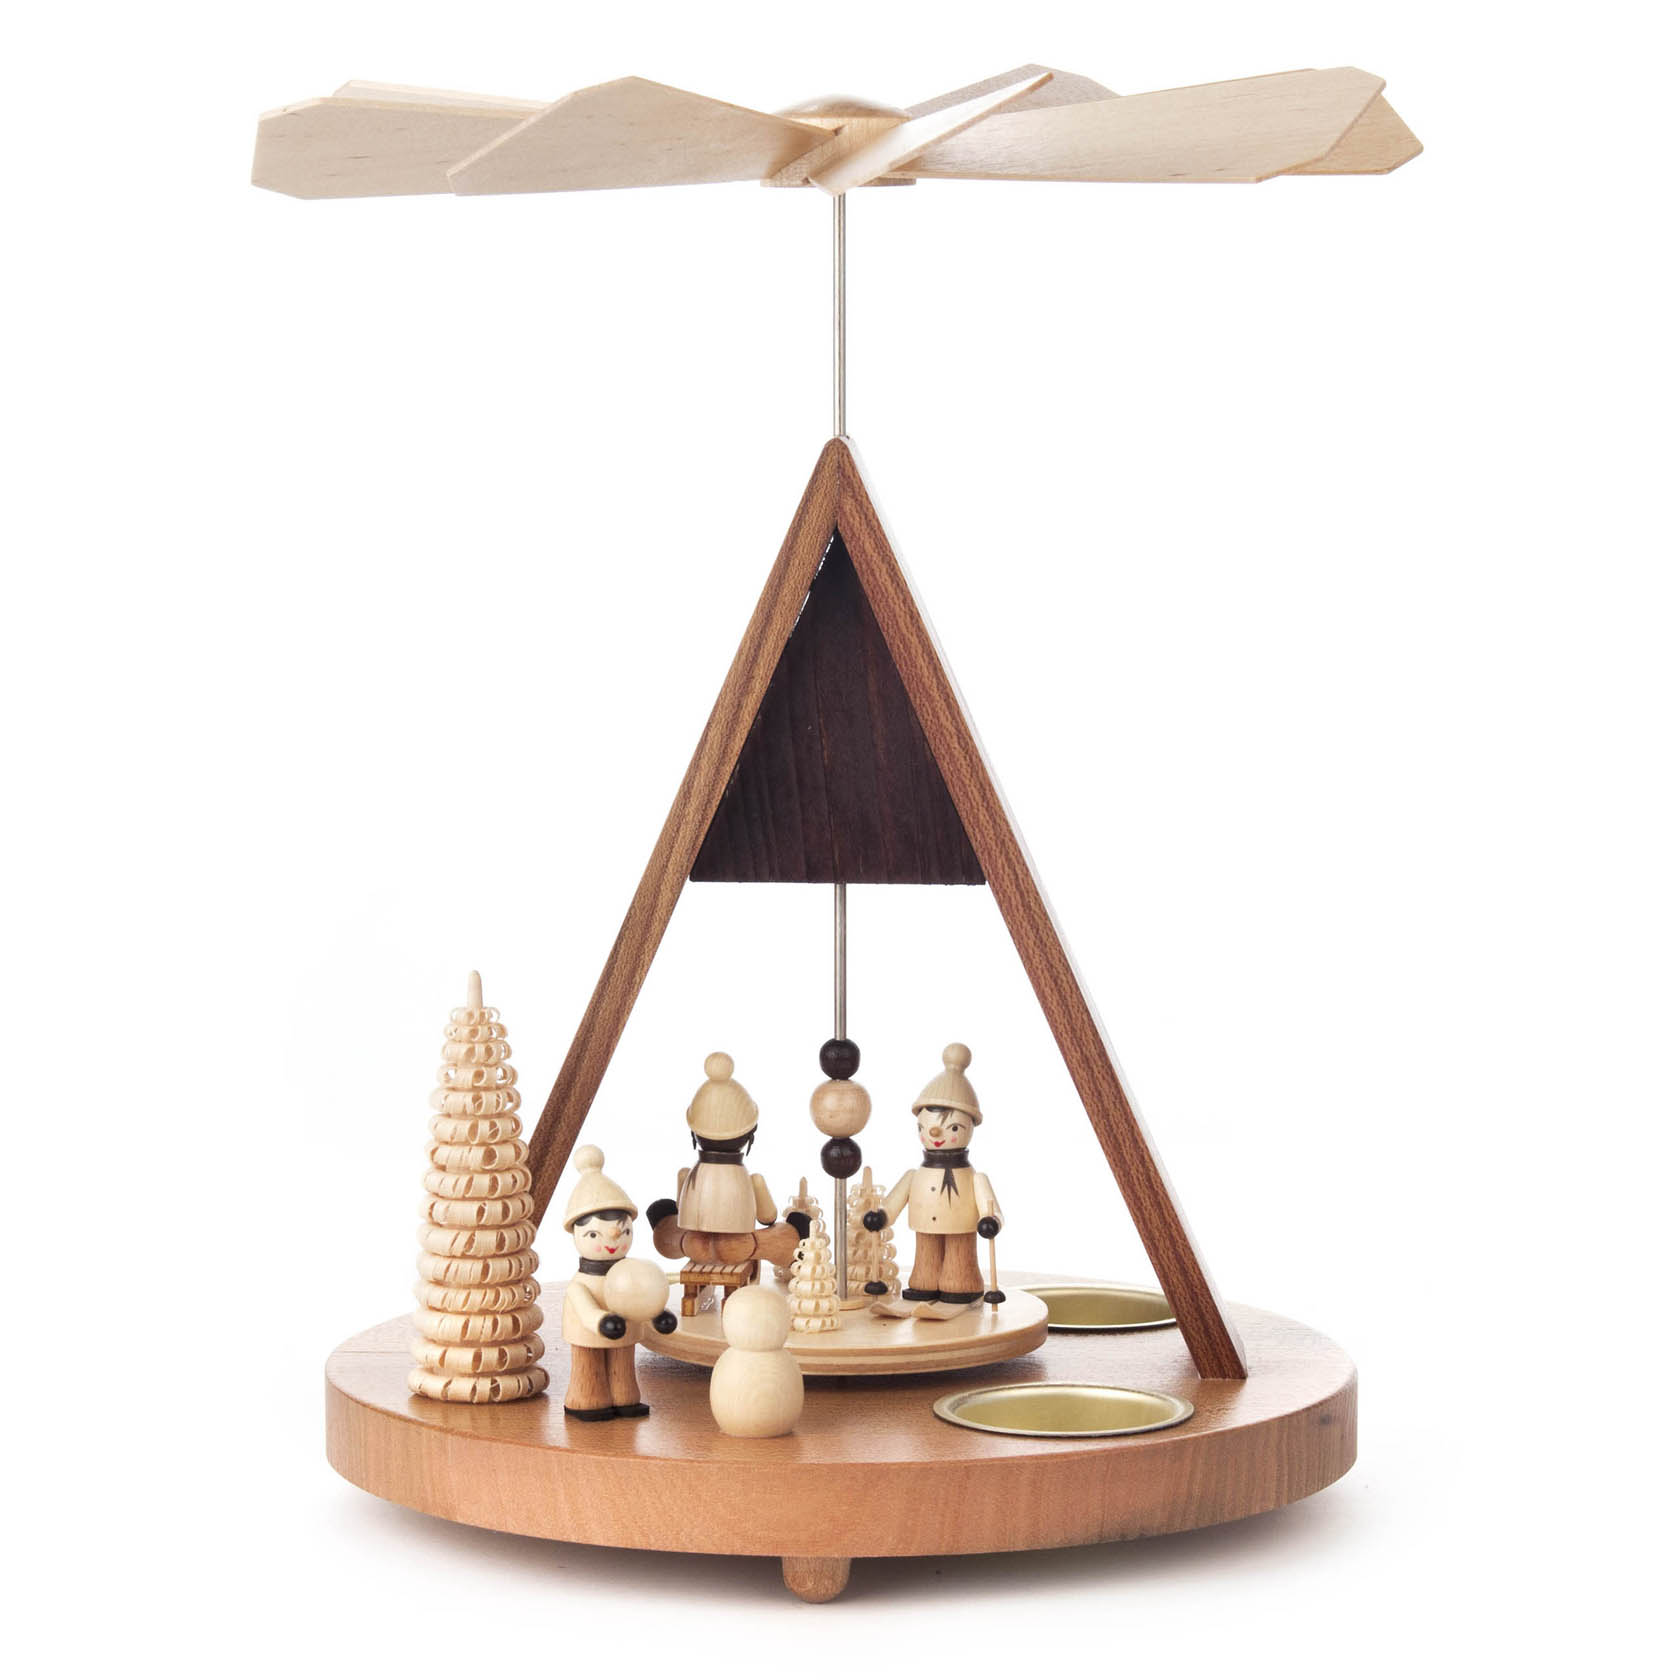 Pyramide mit Winterkindern und Spitzdach, für Teelichte im Dregeno Online Shop günstig kaufen